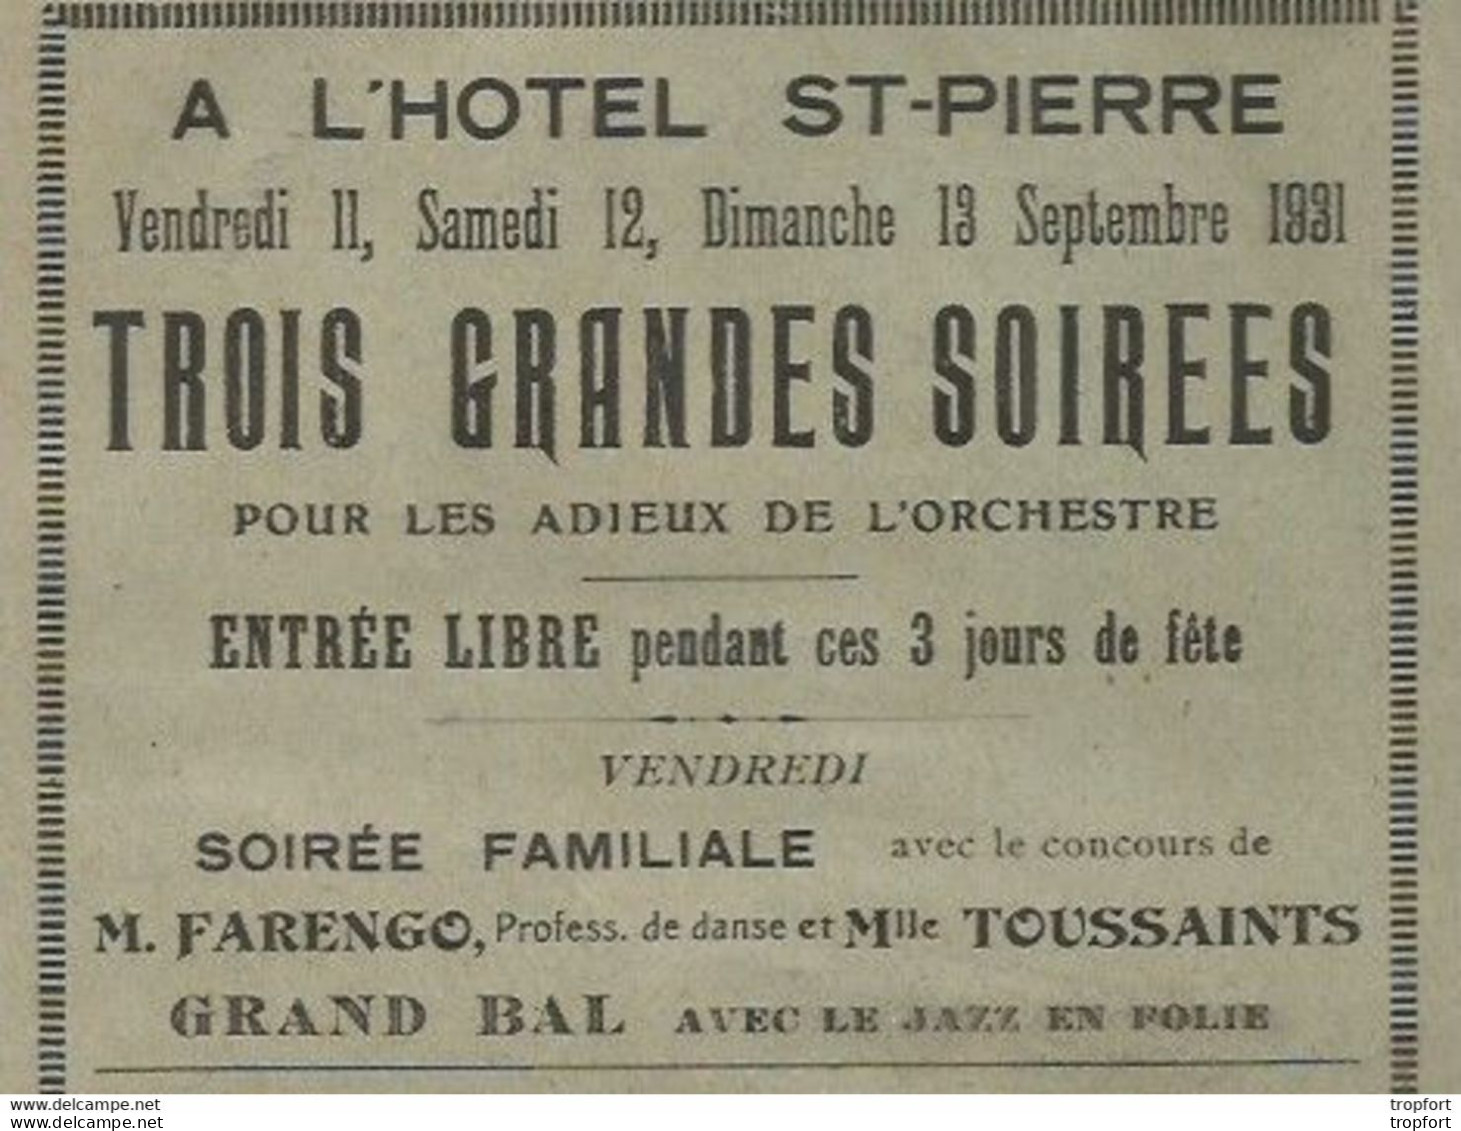 Rare Affichette Programme HOTEL ST-PIERRE 1931 / Baigneurs AULT ONIVAL Farengo Toussaints - Programmes